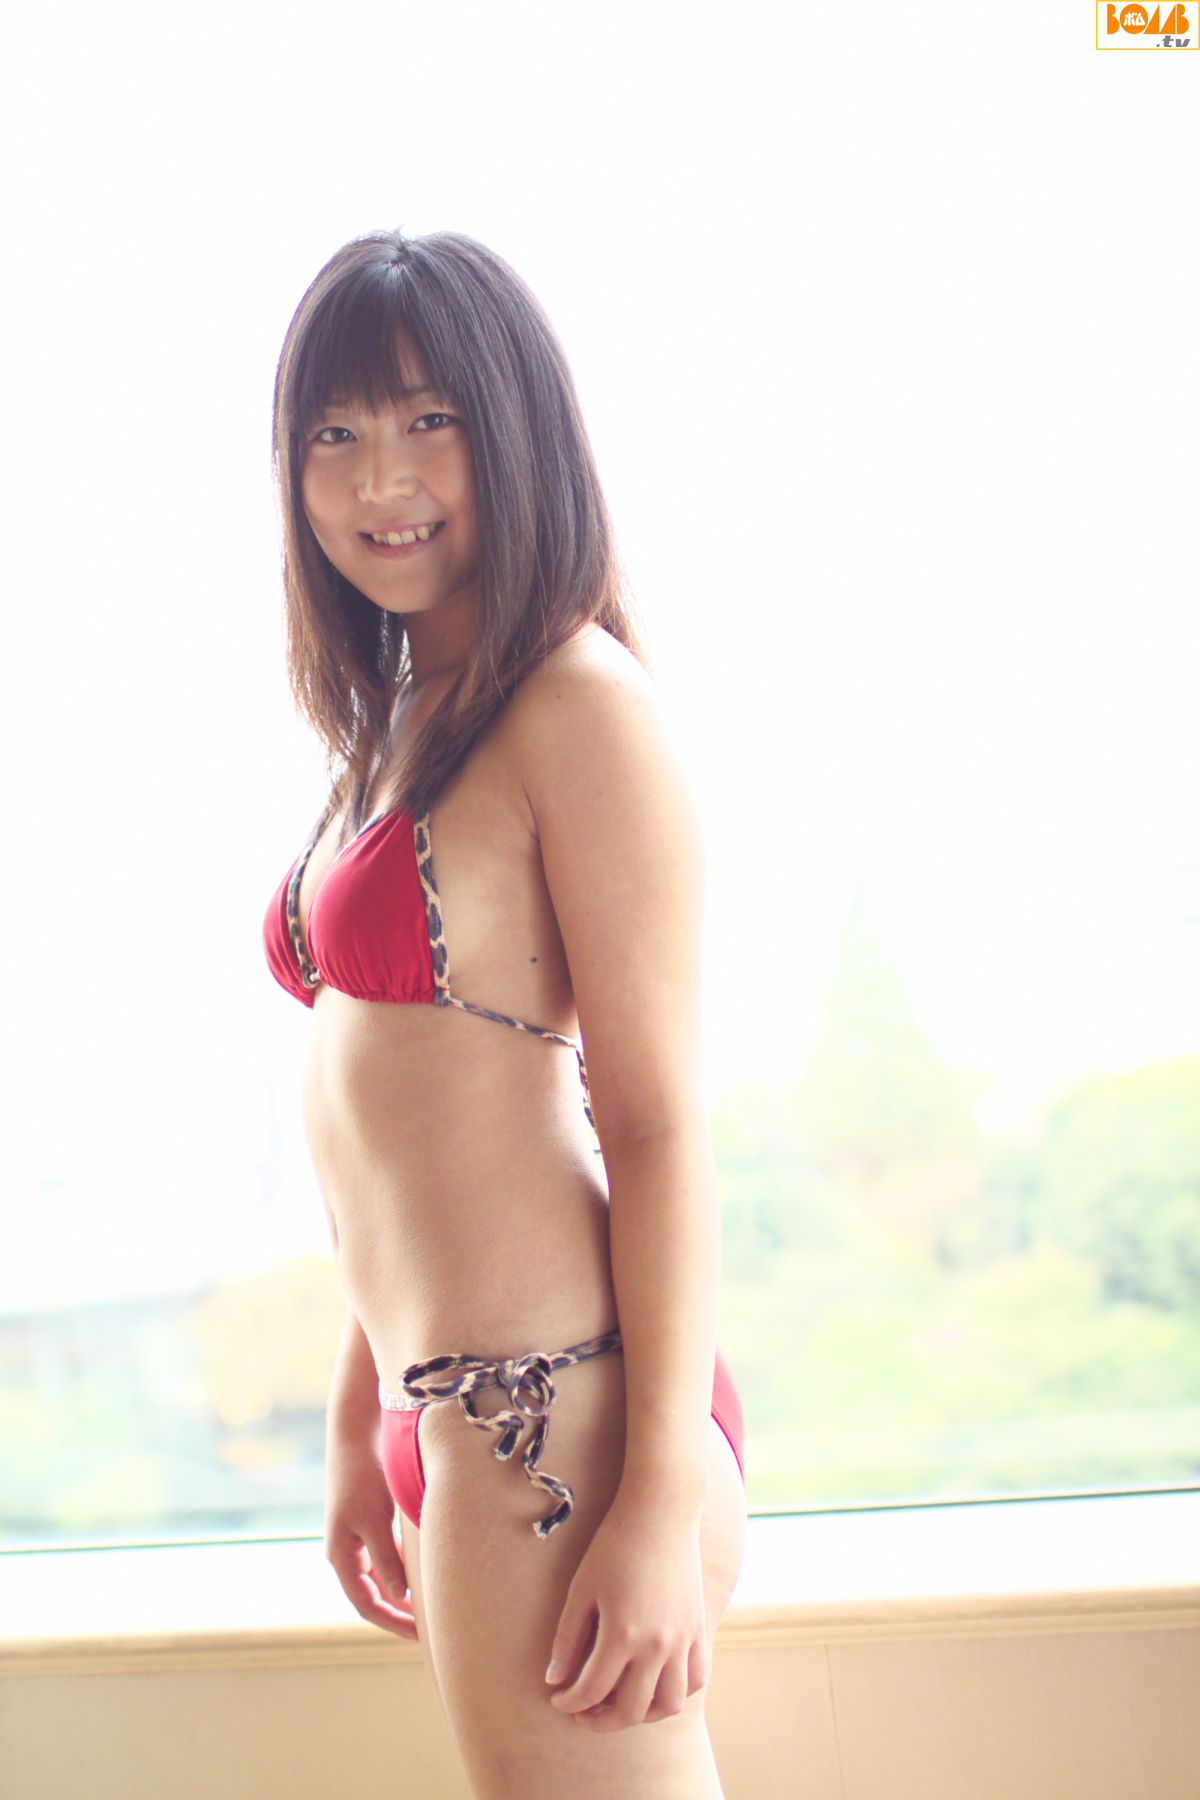 [Bomb.TV] 2008年12月刊 一色美名 Mina Isshiki 写真集2